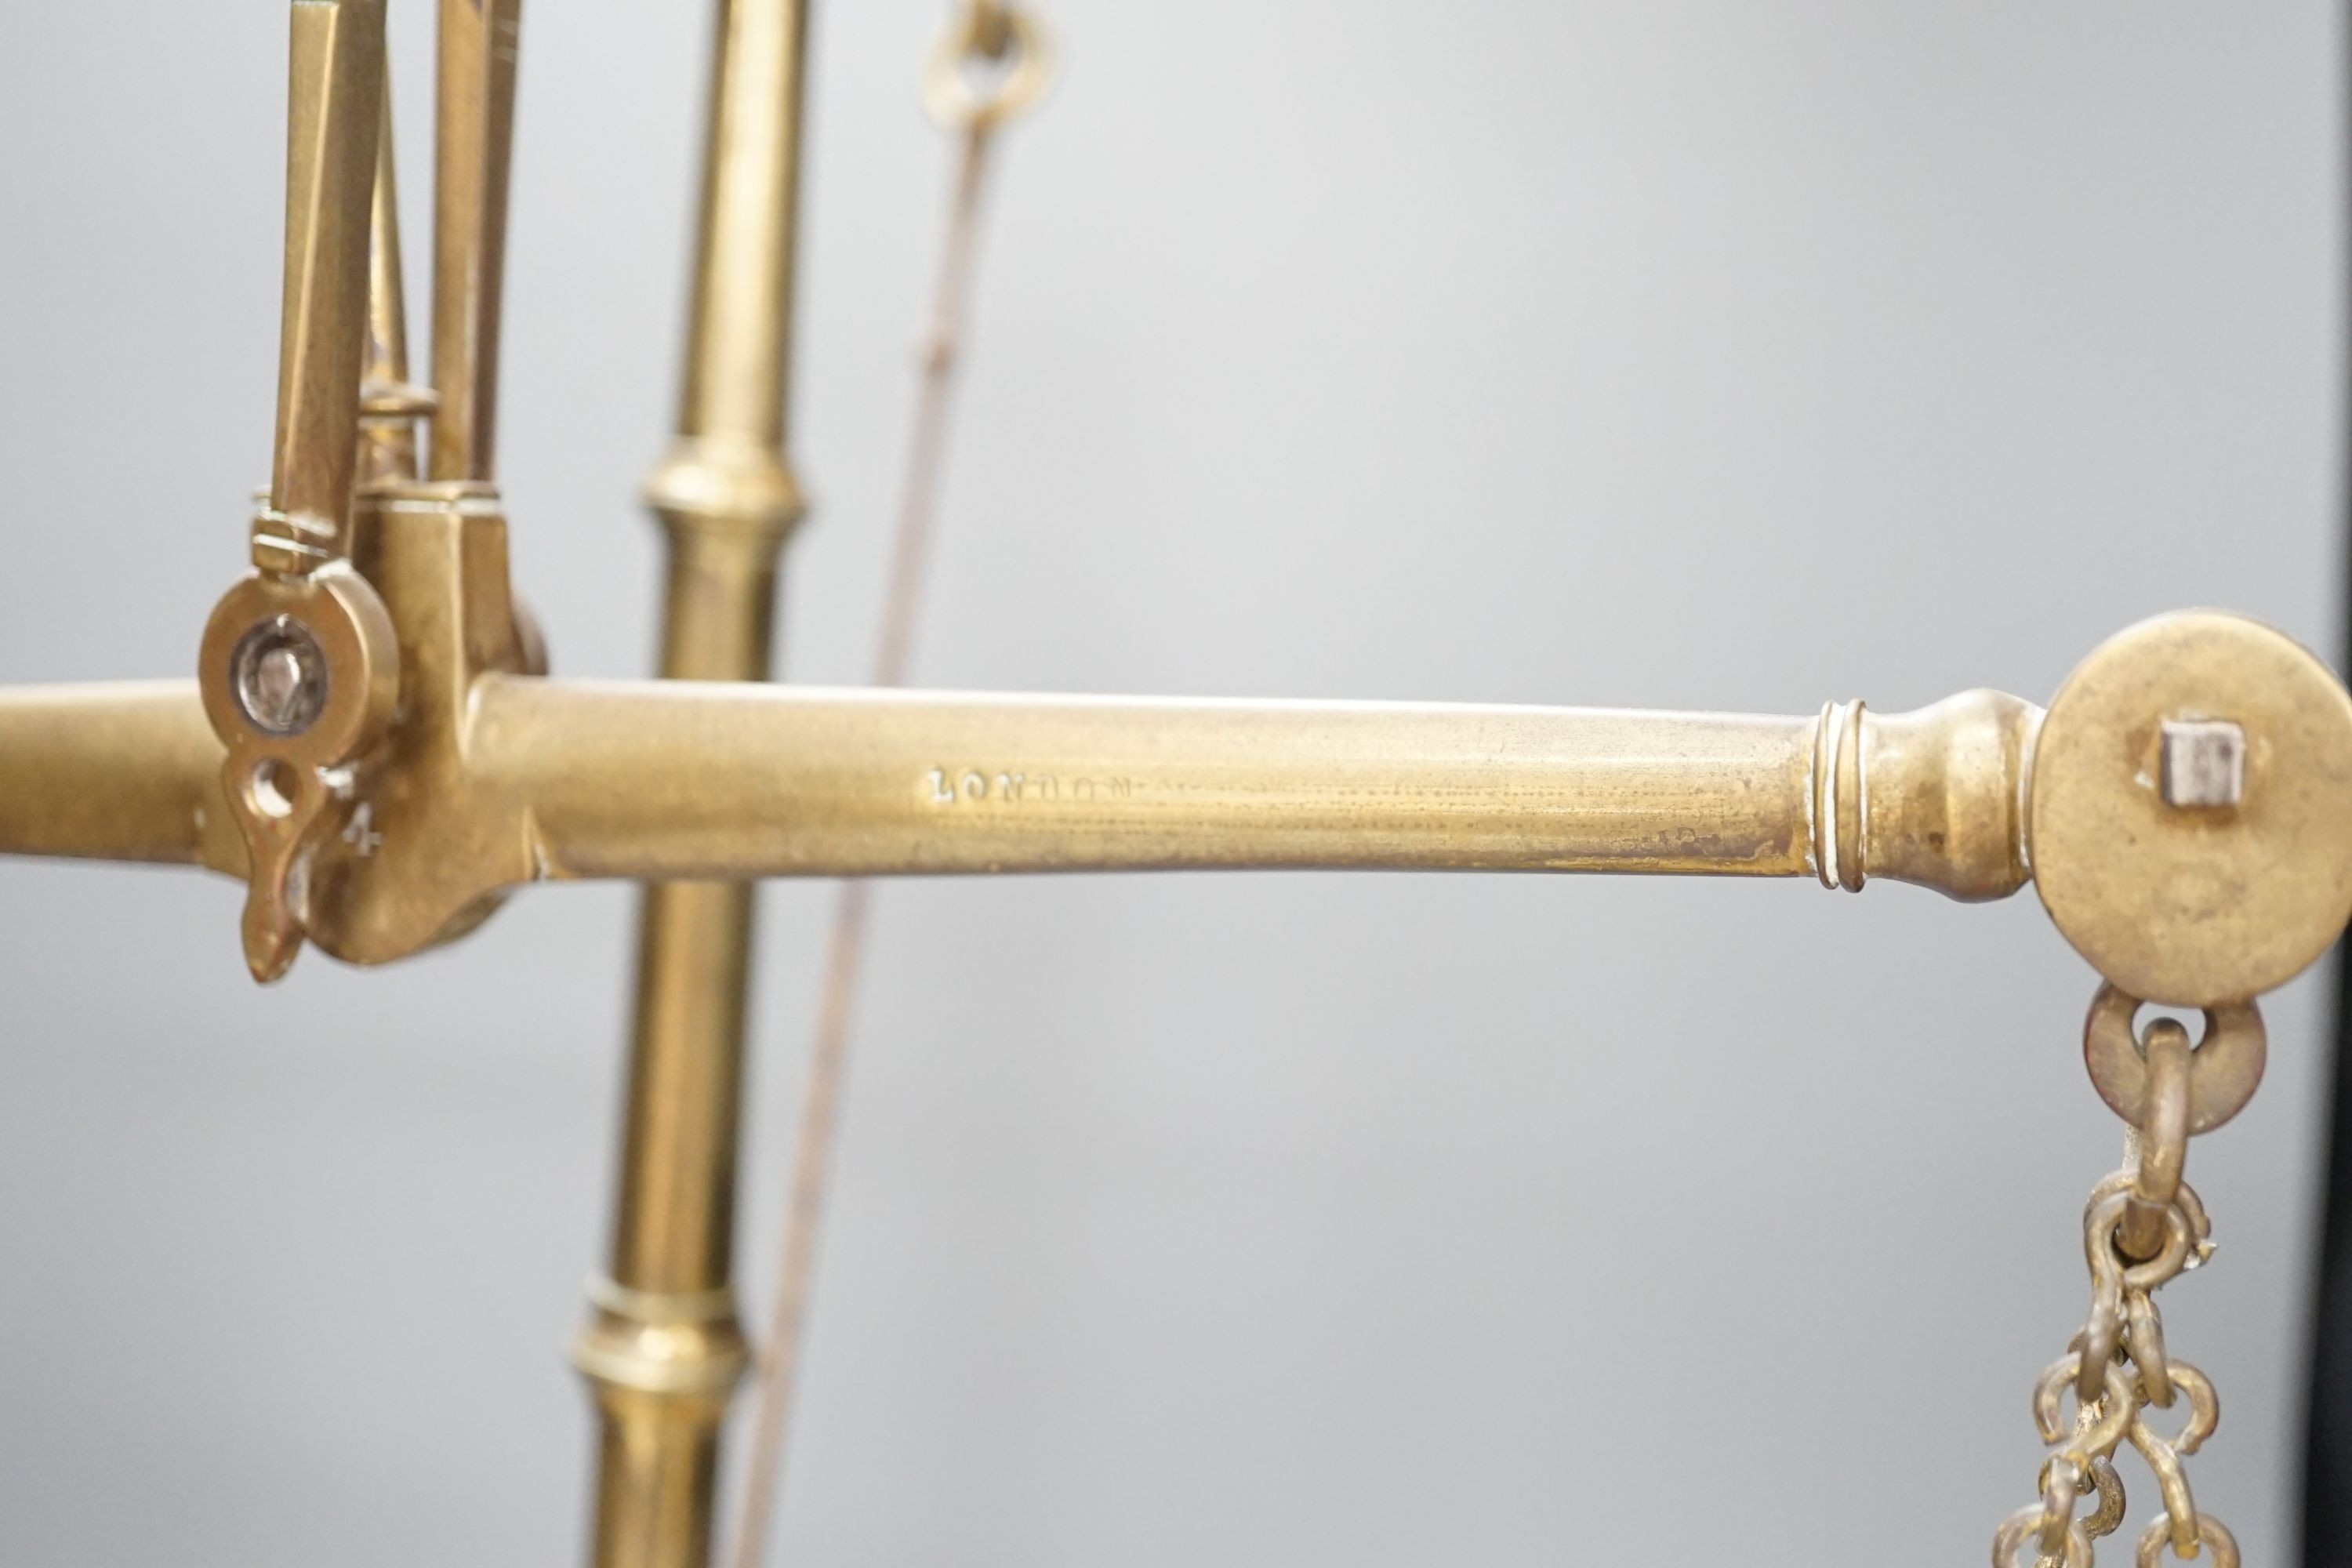 A Doyle & Son, London brass balance scale, 55cm. high